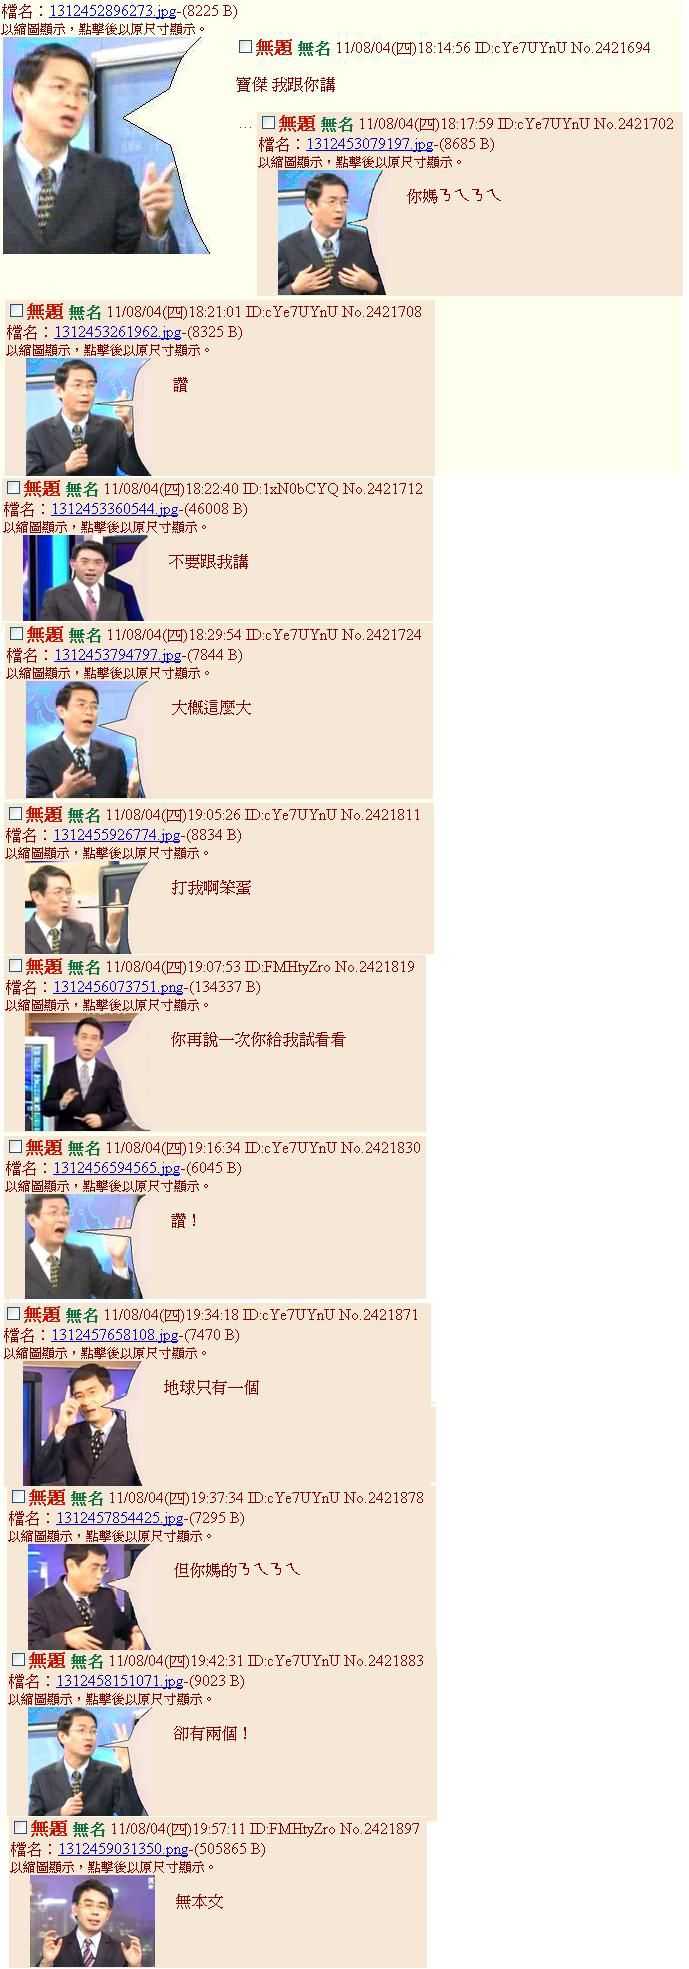 大家觉得旗米拉论坛里最"精彩"的台湾政论节目是什么?